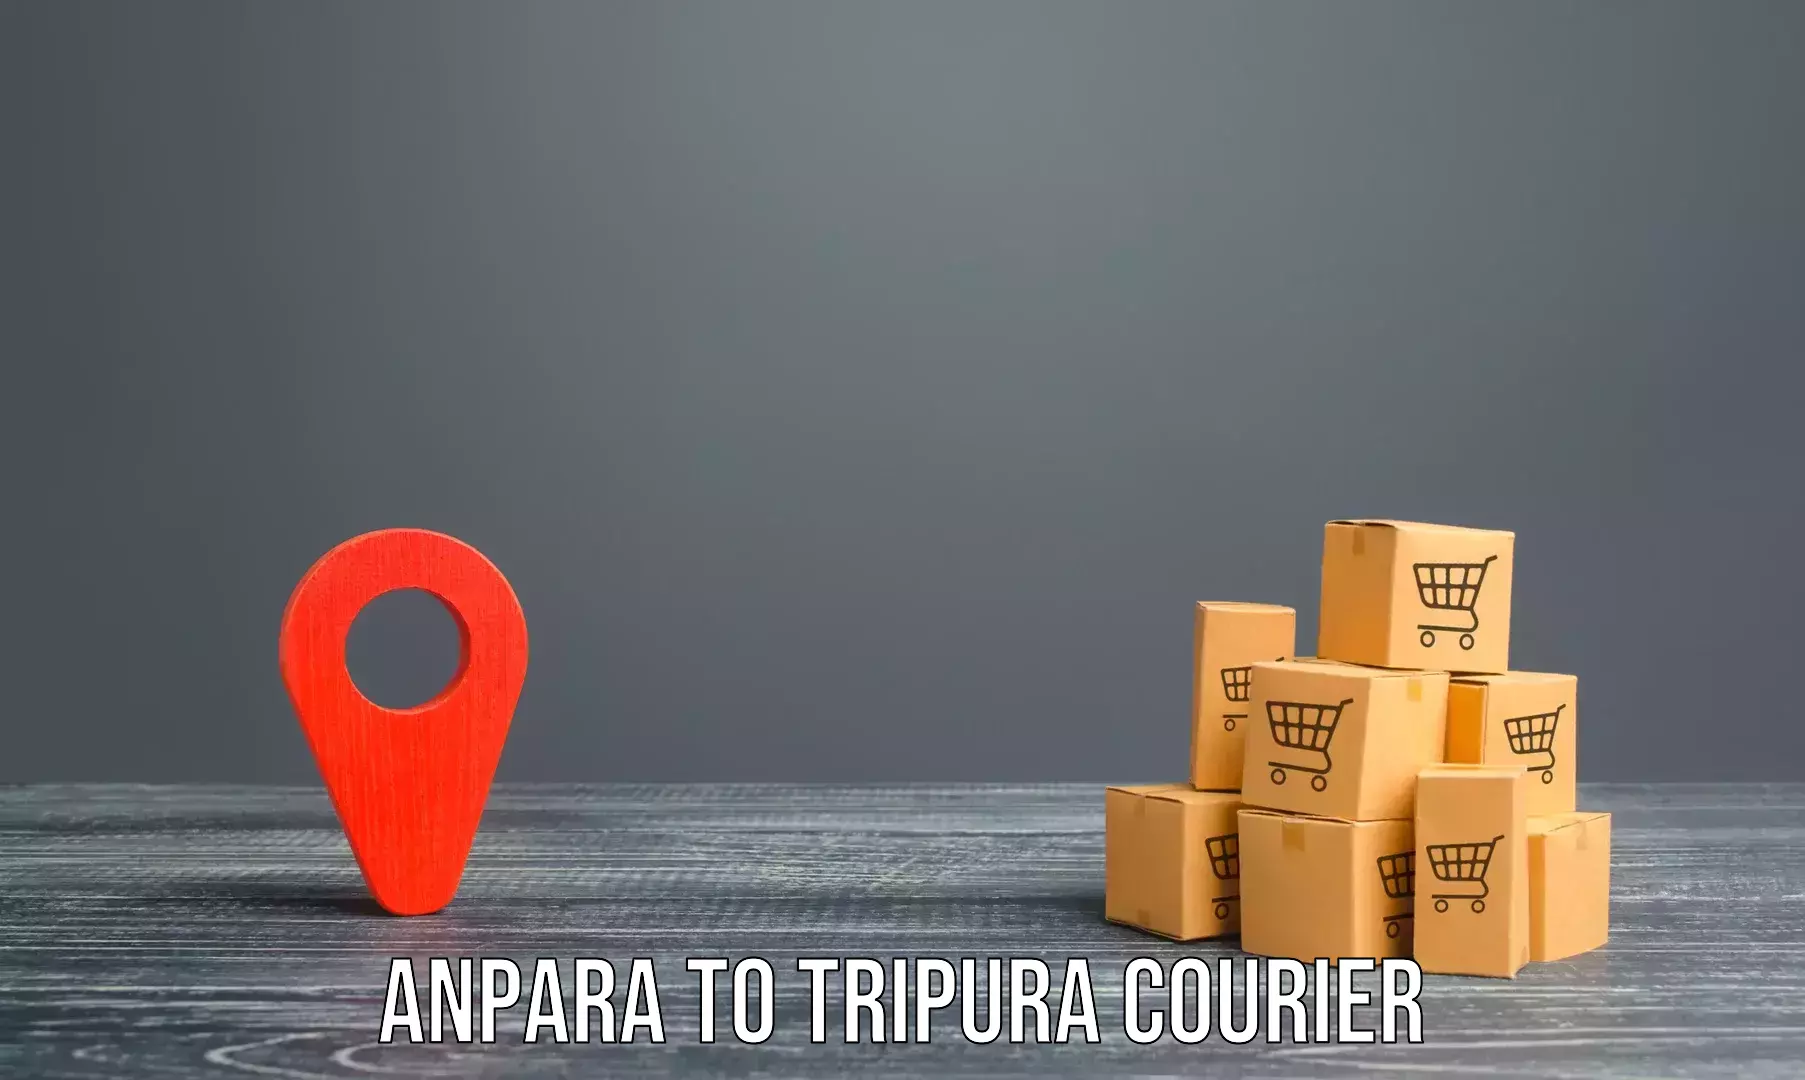 Furniture moving experts Anpara to Tripura